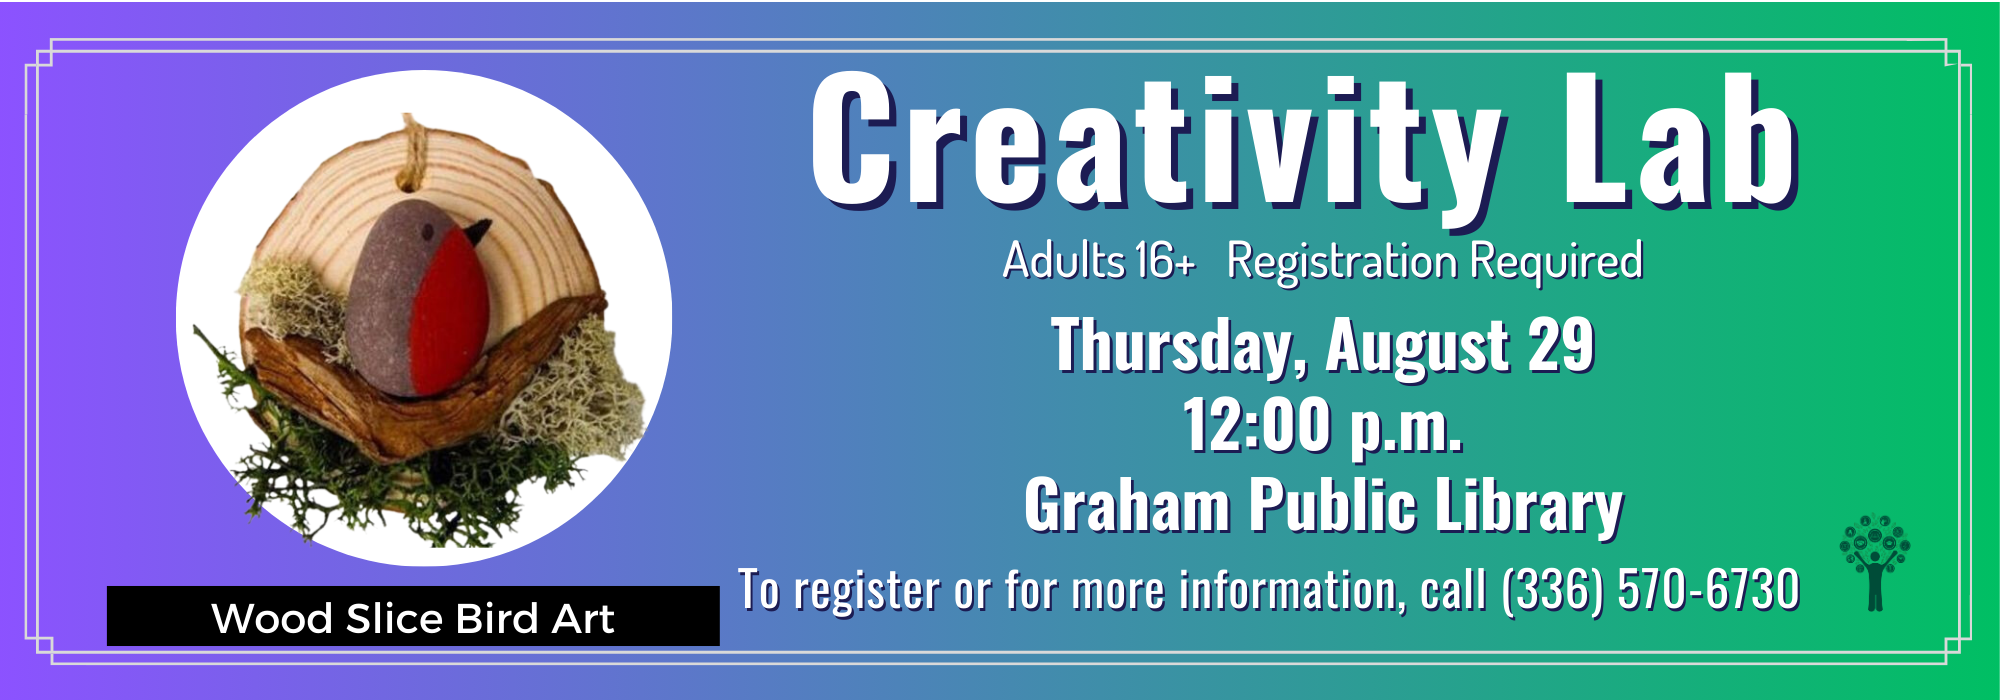 8.29 at Noon - Creativity Lab at Graham